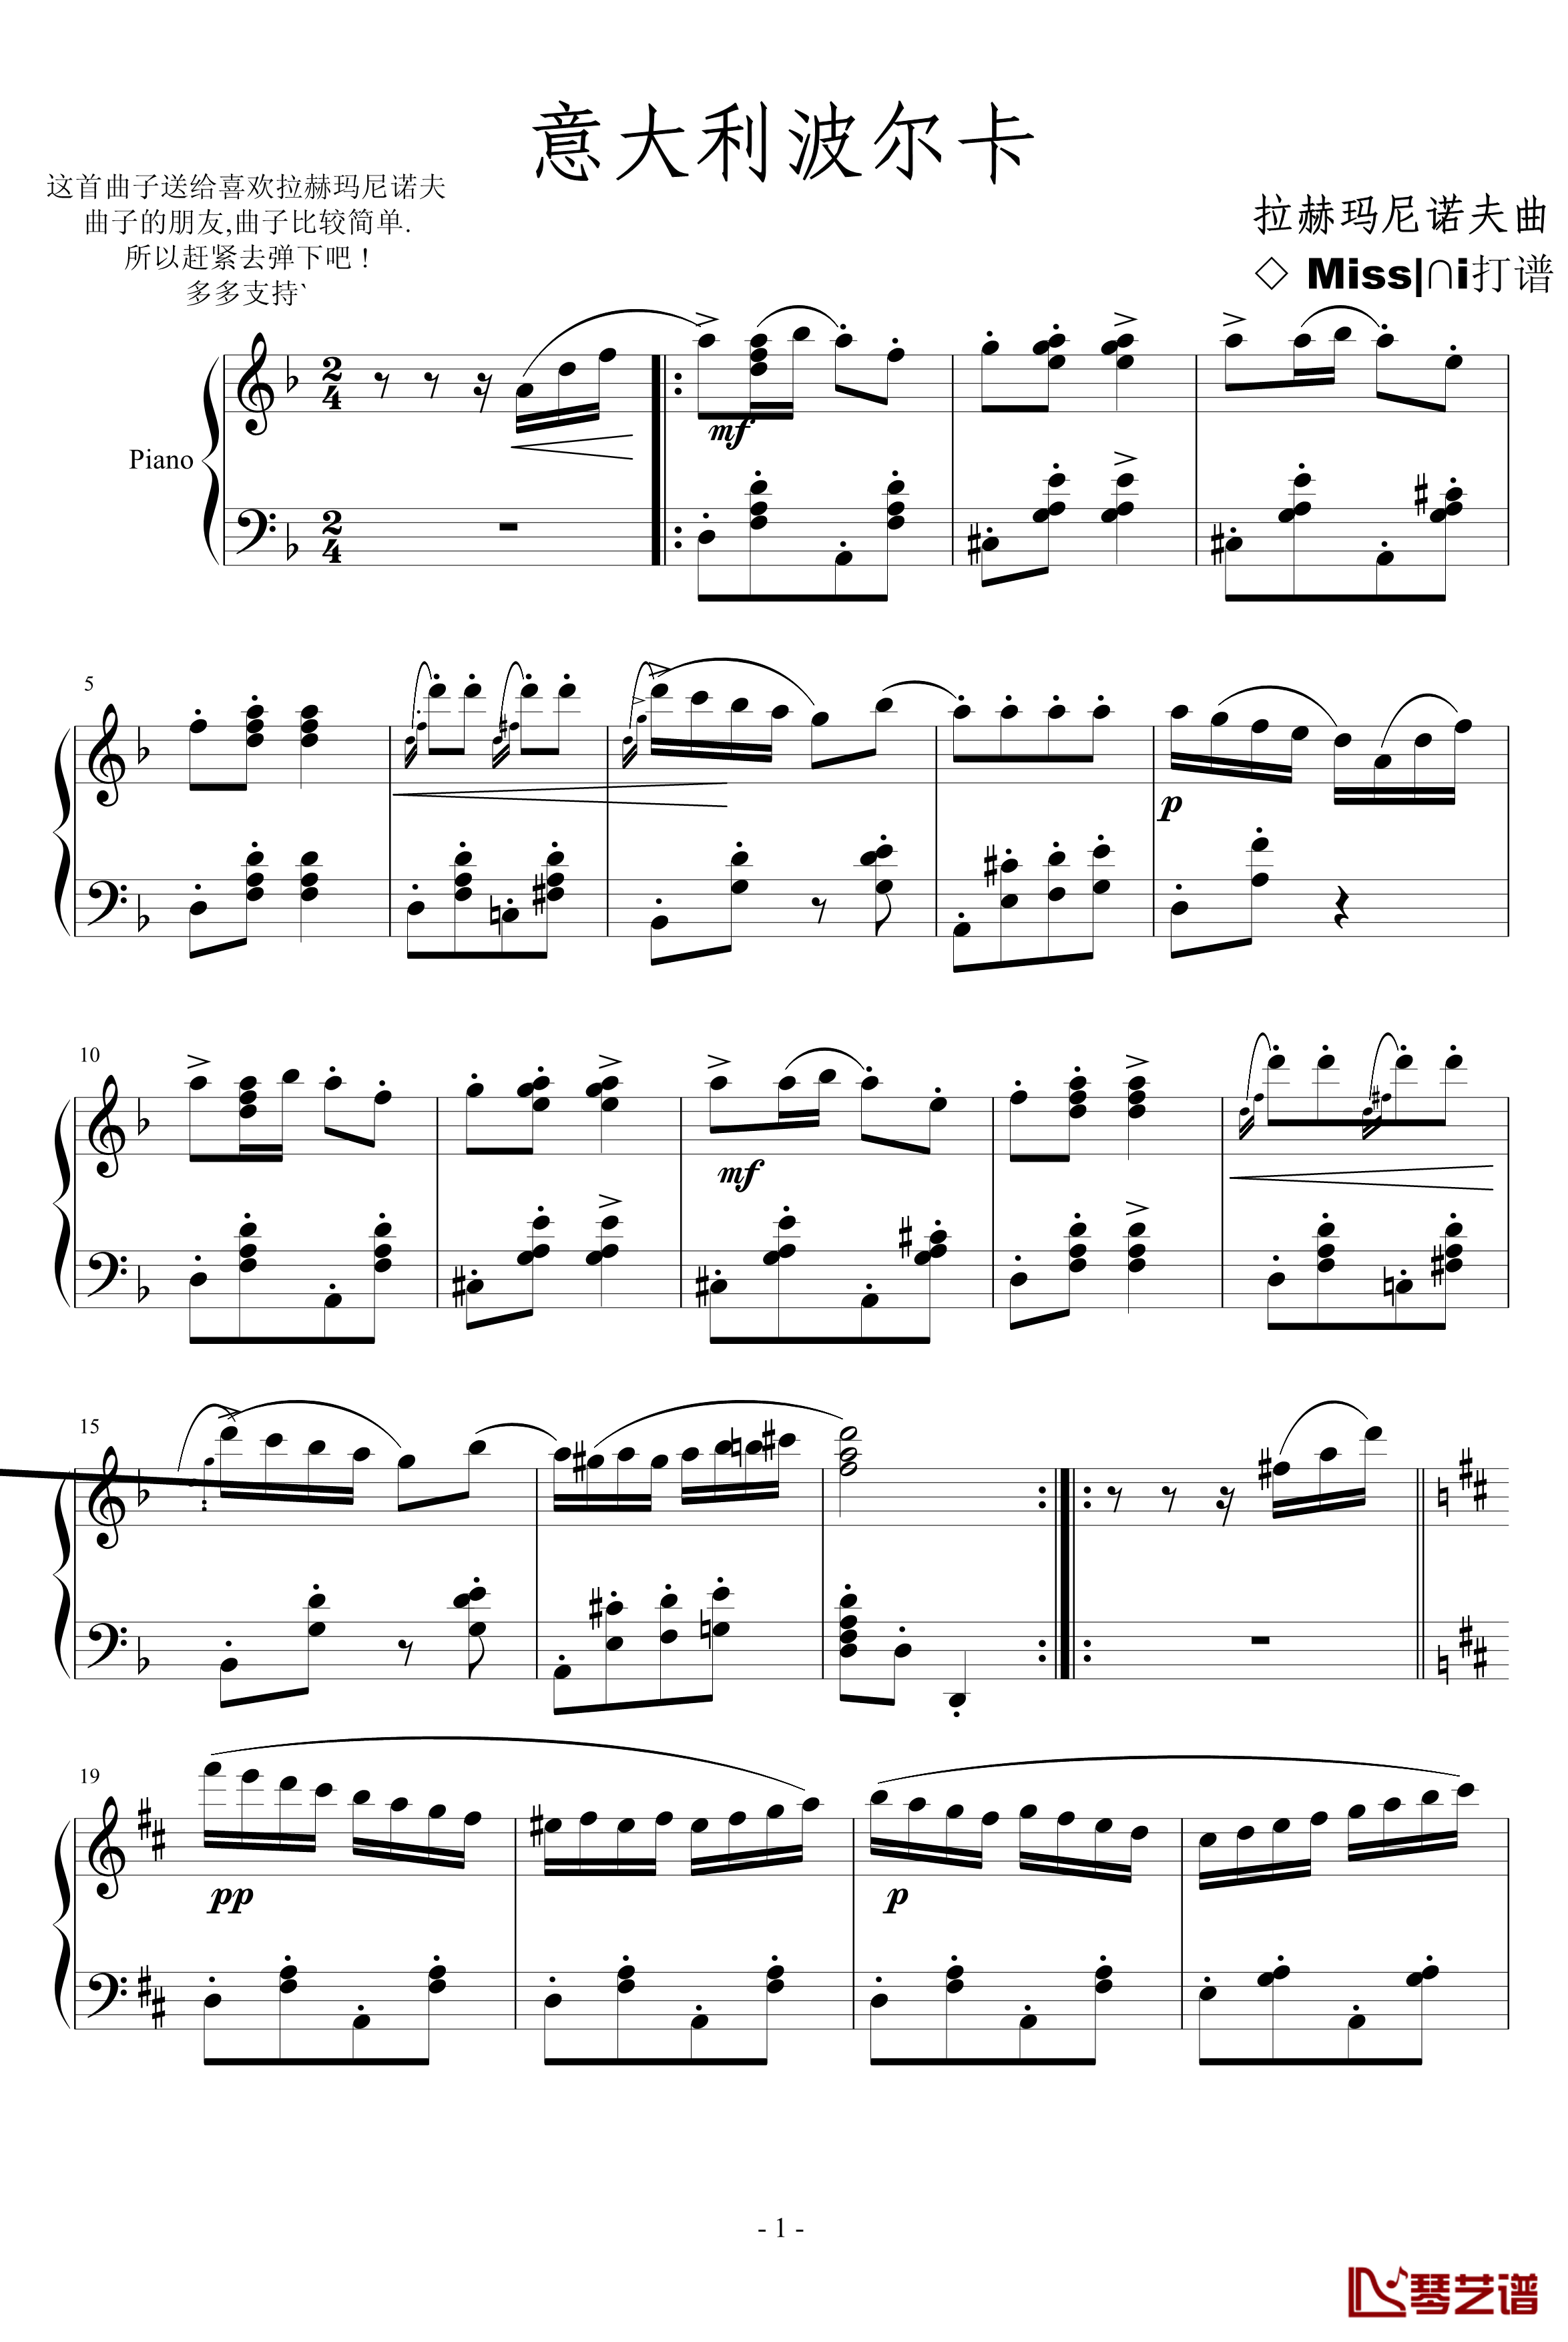 意大利波尔卡钢琴谱-拉赫马尼若夫1